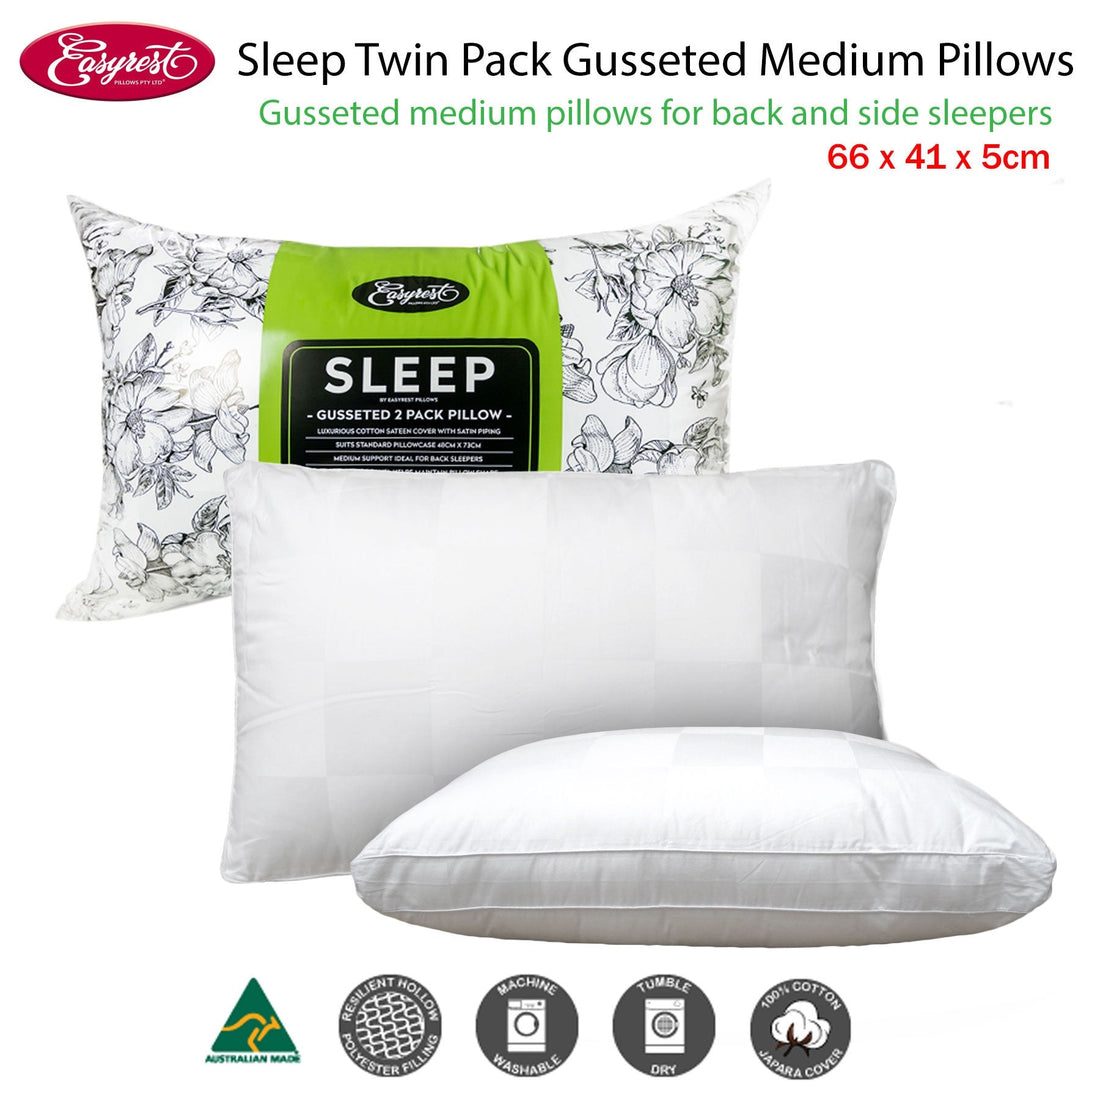 Sleep Twin Pack Gusseted Medium Standard Pillows